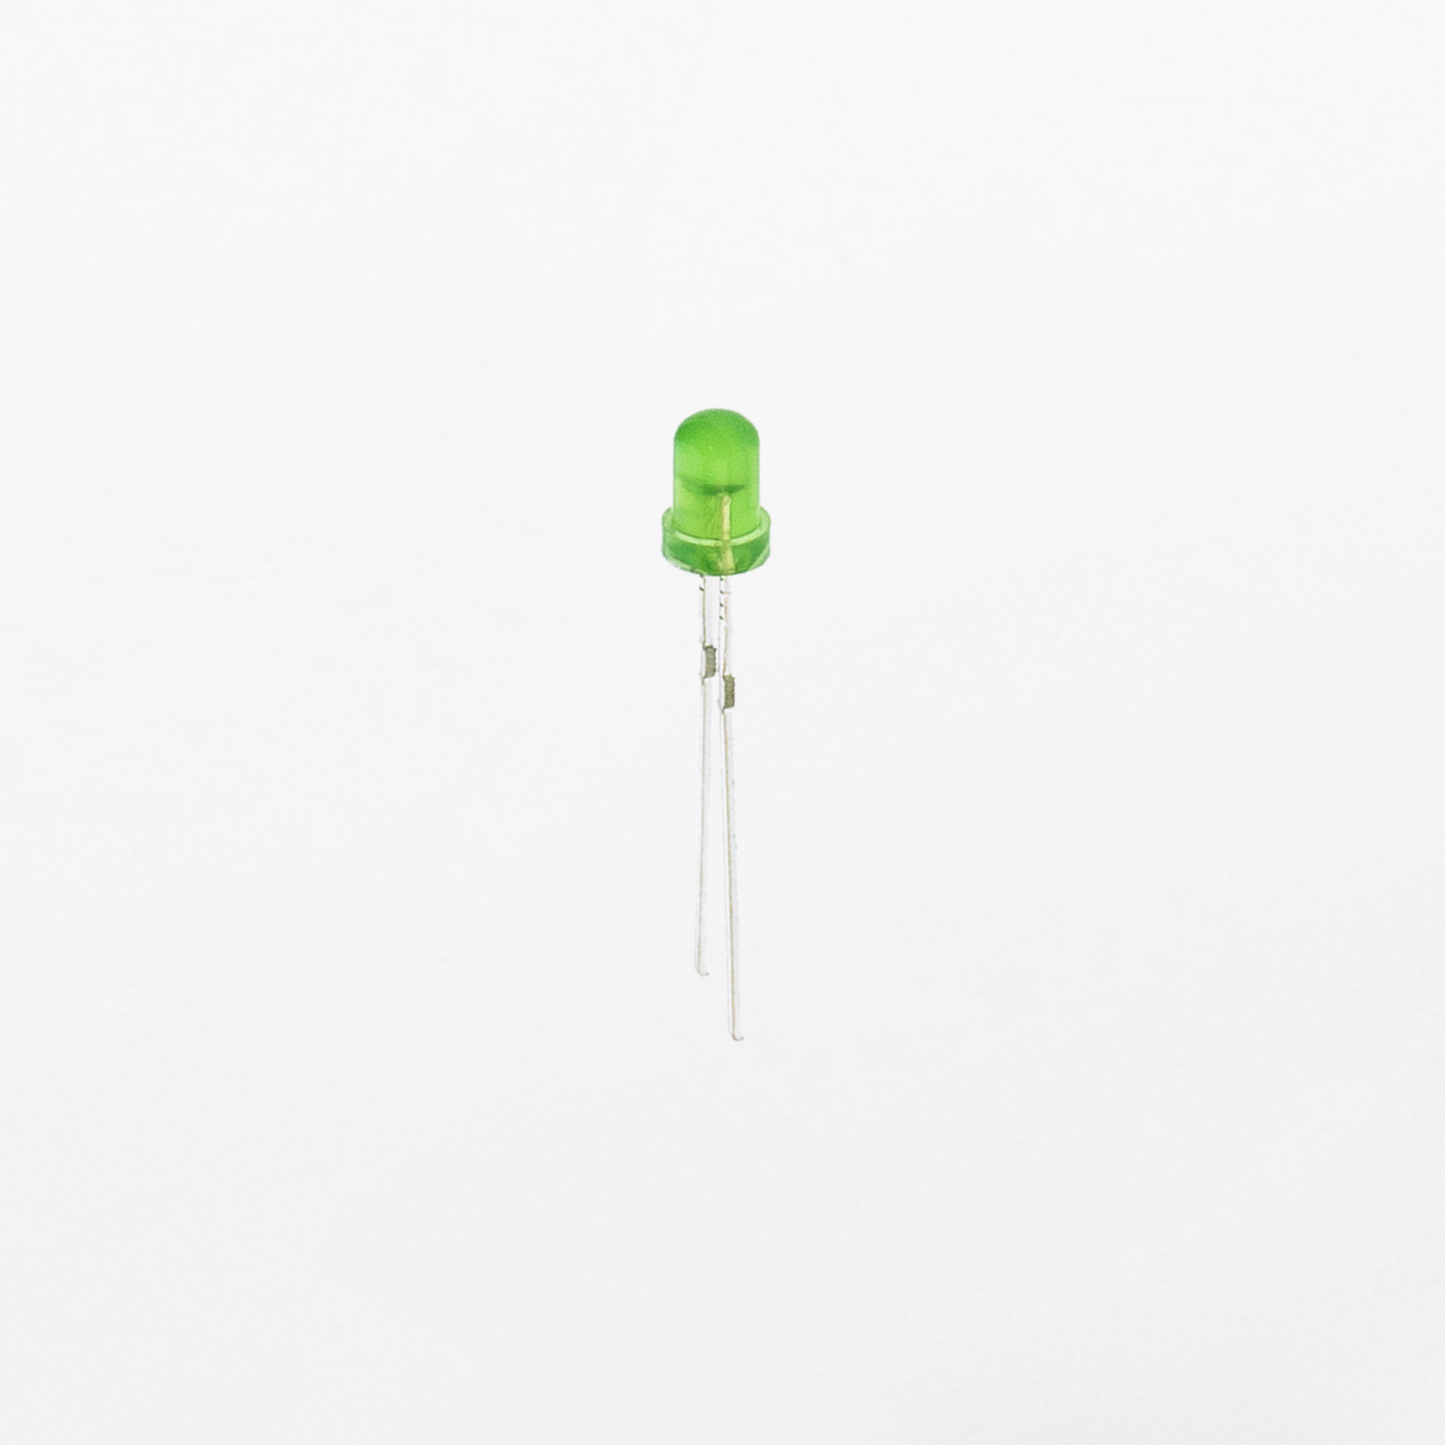 LED - Green 3mm (25 Pack)